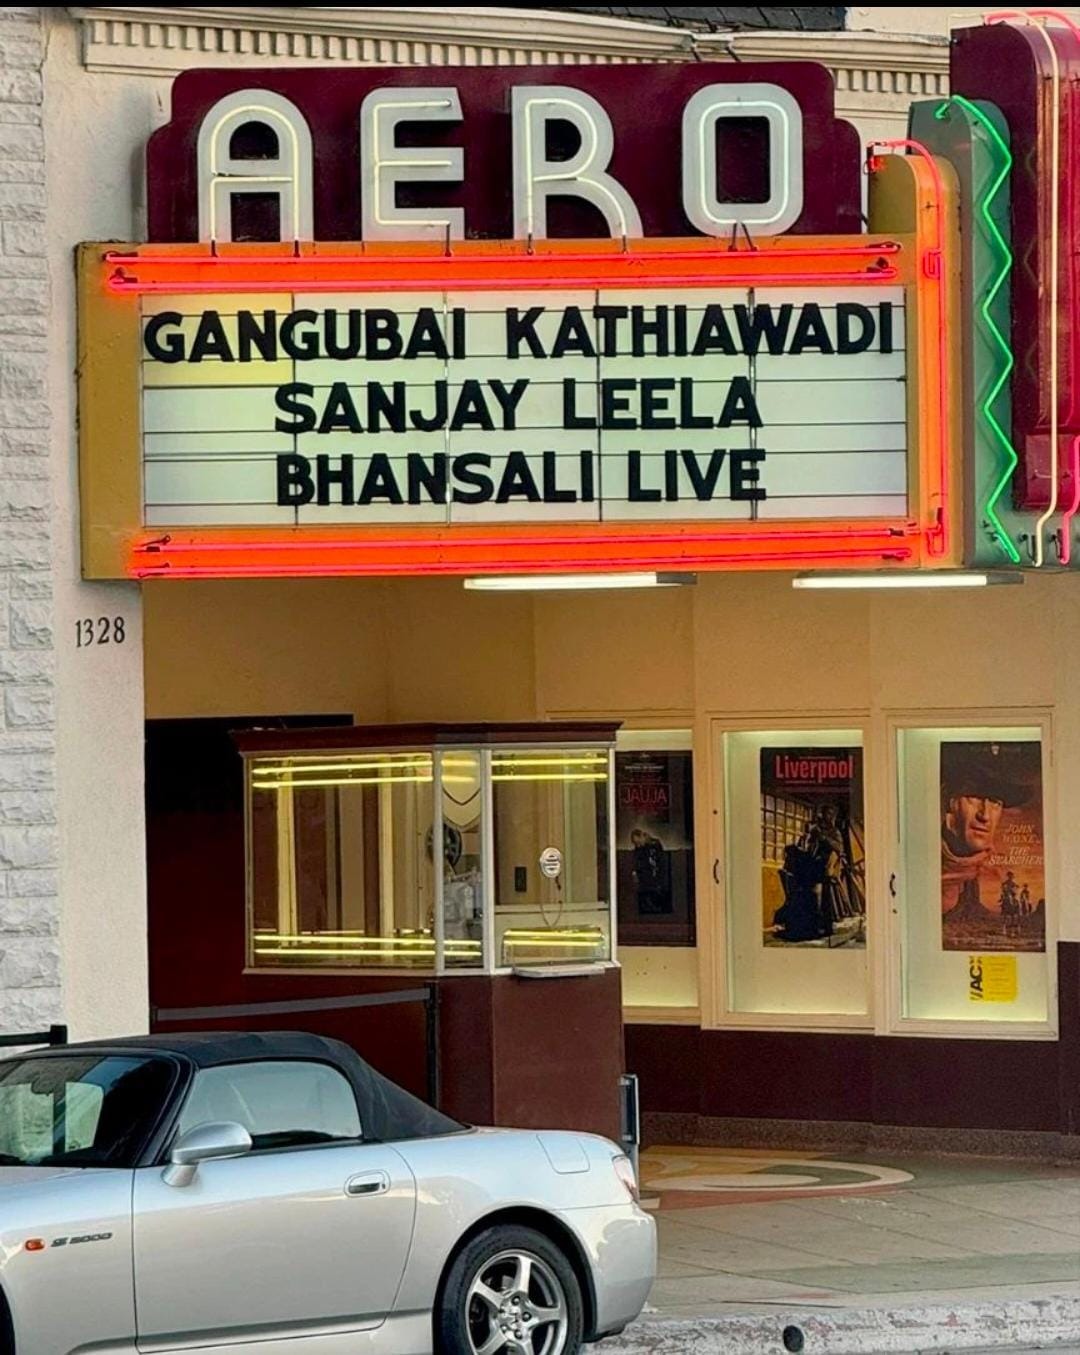 लॉस एंजेलिस के एयरो थिएटर में चला संजय लीला भंसाली की फिल्म "गंगुबाई काठियावाड़ी" का जादू, दर्शक हुए प्रभावित 45940